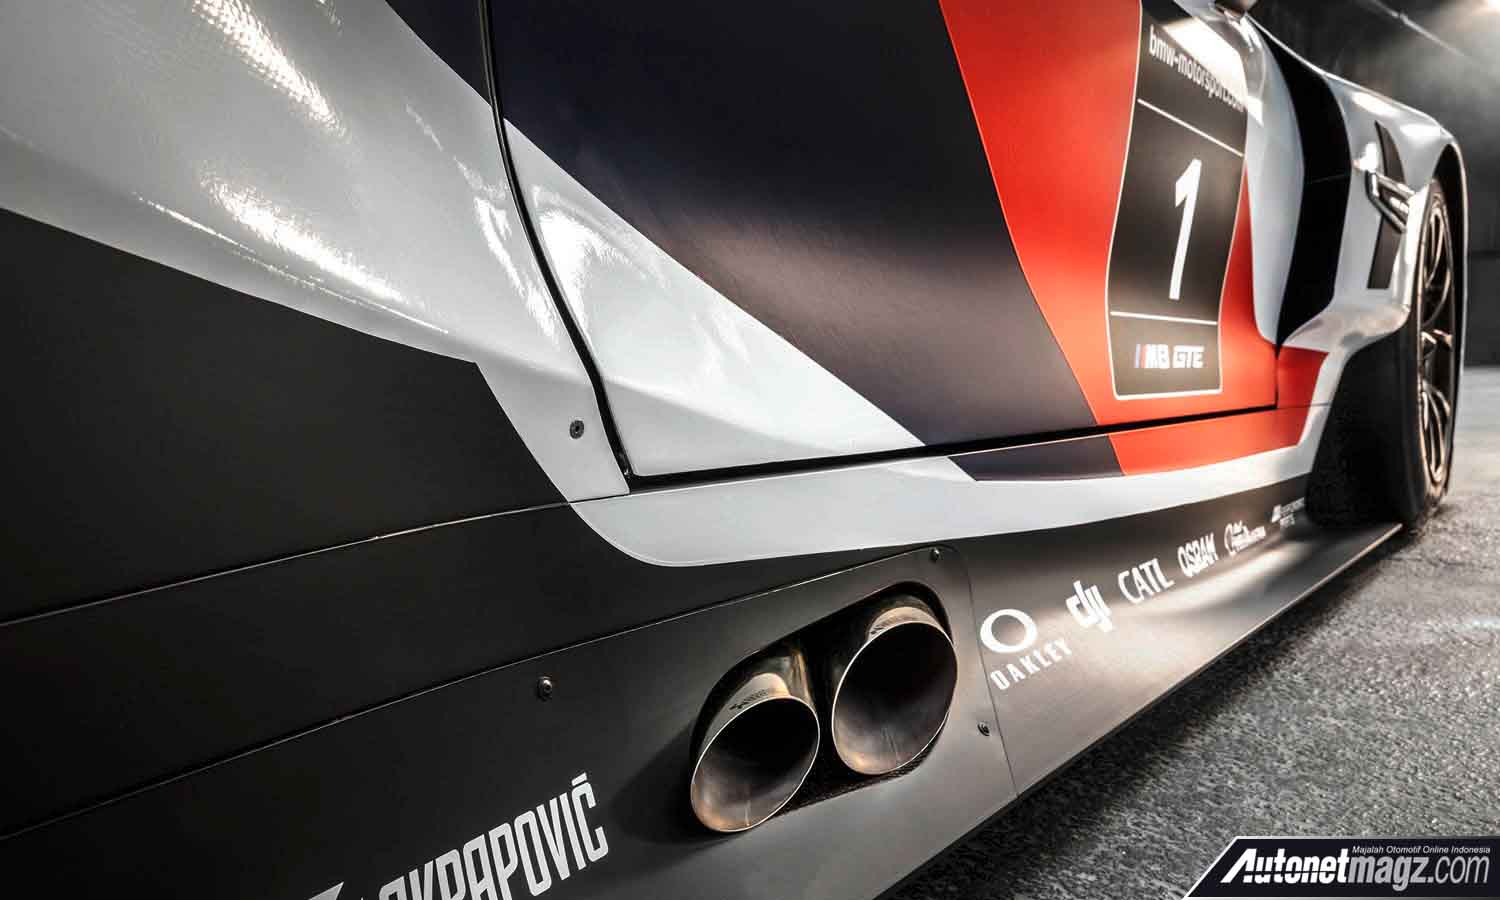 Berita, knalpot BMW M8 GTE: Frankfurt Motor Show 2017 : BMW M8 GTE Diperkenalkan Sebelum Versi Produksi